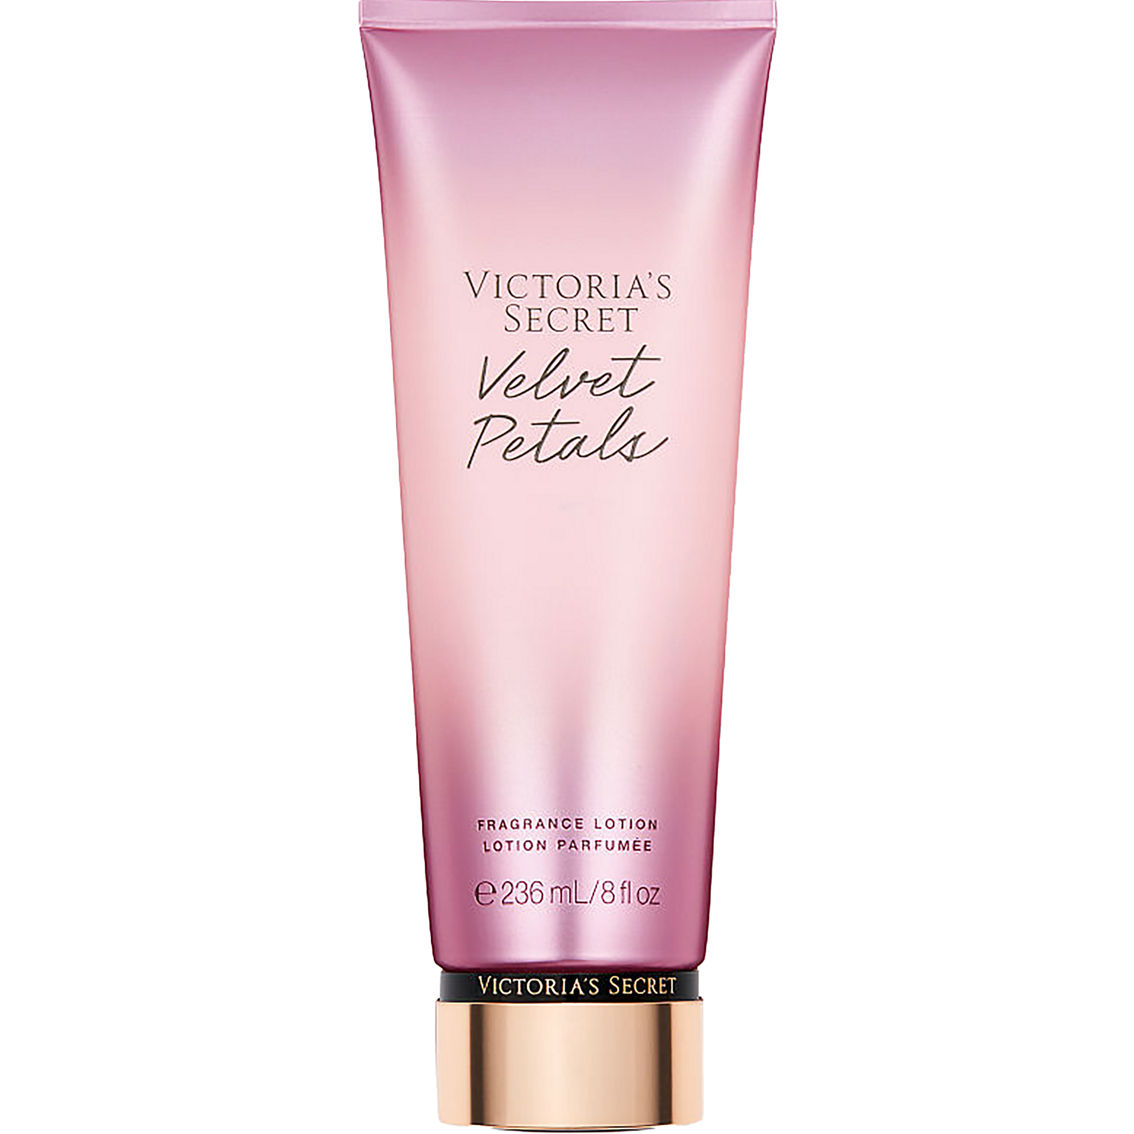 Victoria's Secret Velvet Petals 8 Oz Fragrance Lotion